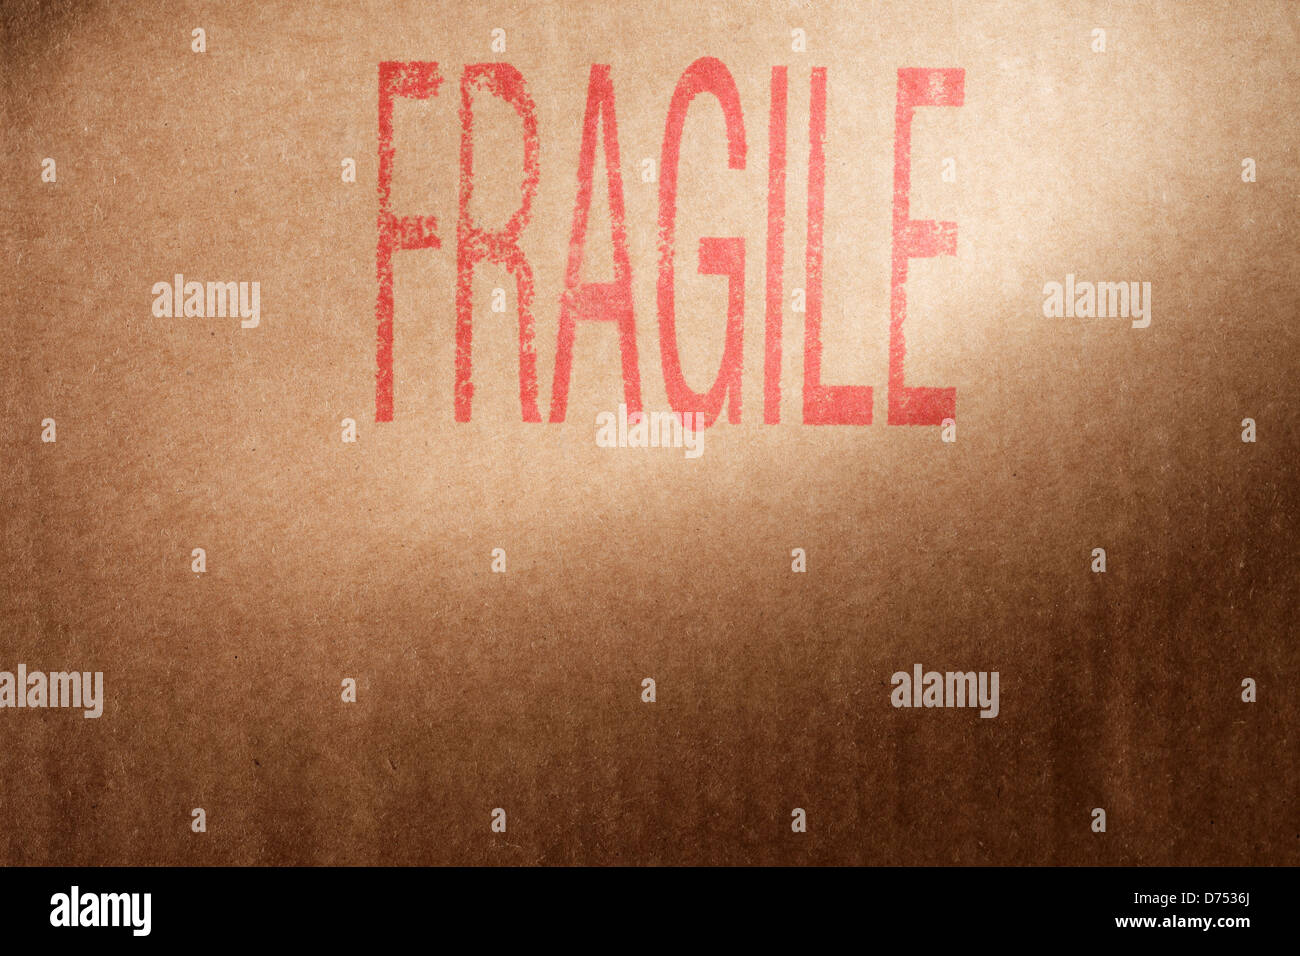 Nahaufnahme von einem braunen Karton mit Wort "Fragile" gestempelt mit roter Tinte. Stockfoto